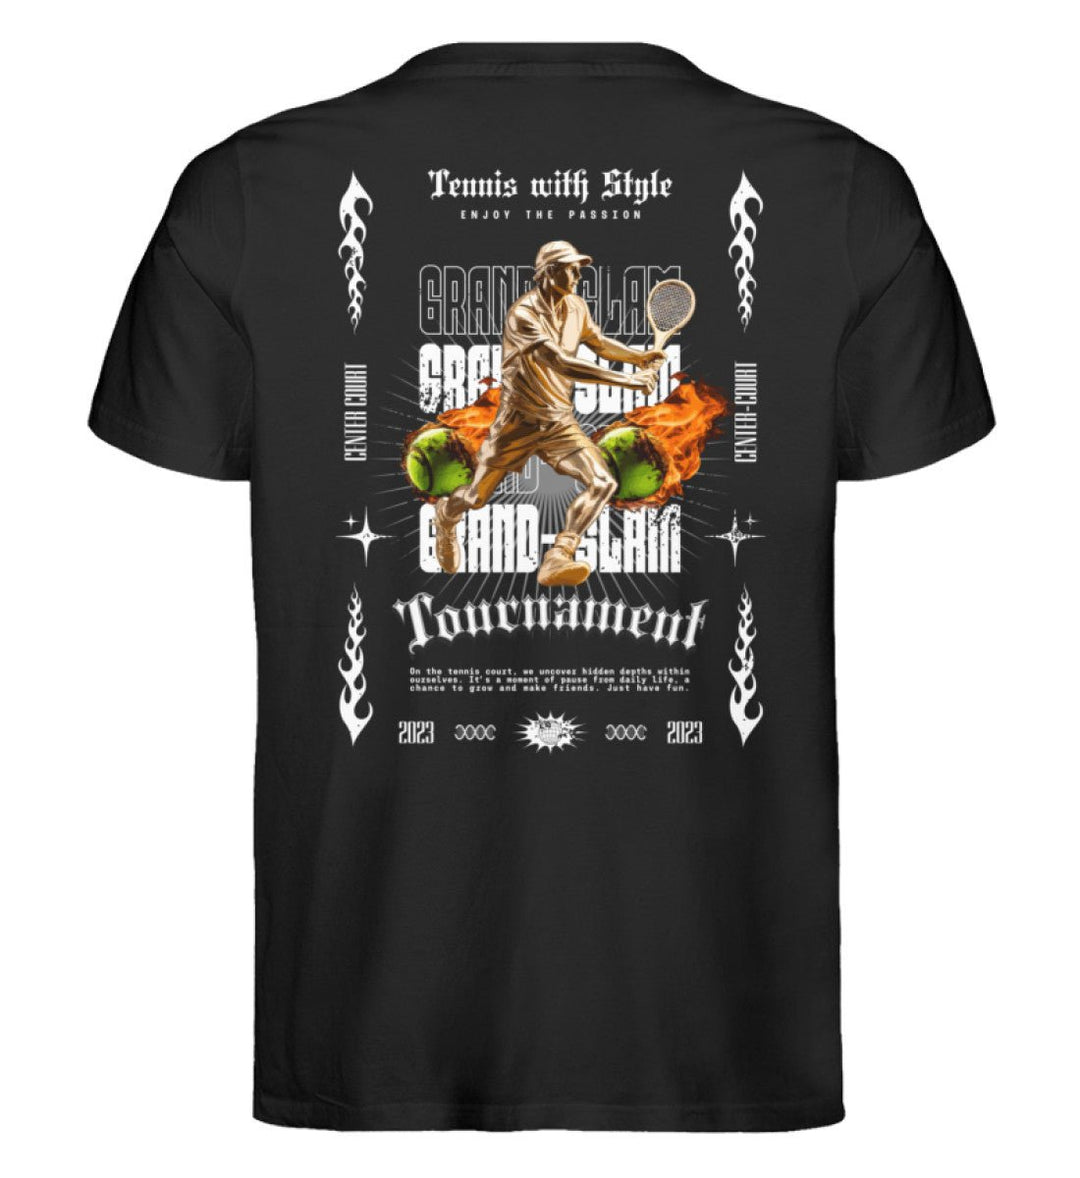 Tennis with style | Premium Herren T-Shirt Rückendruck - Matchpoint24 - Kleidung für Tennisfans